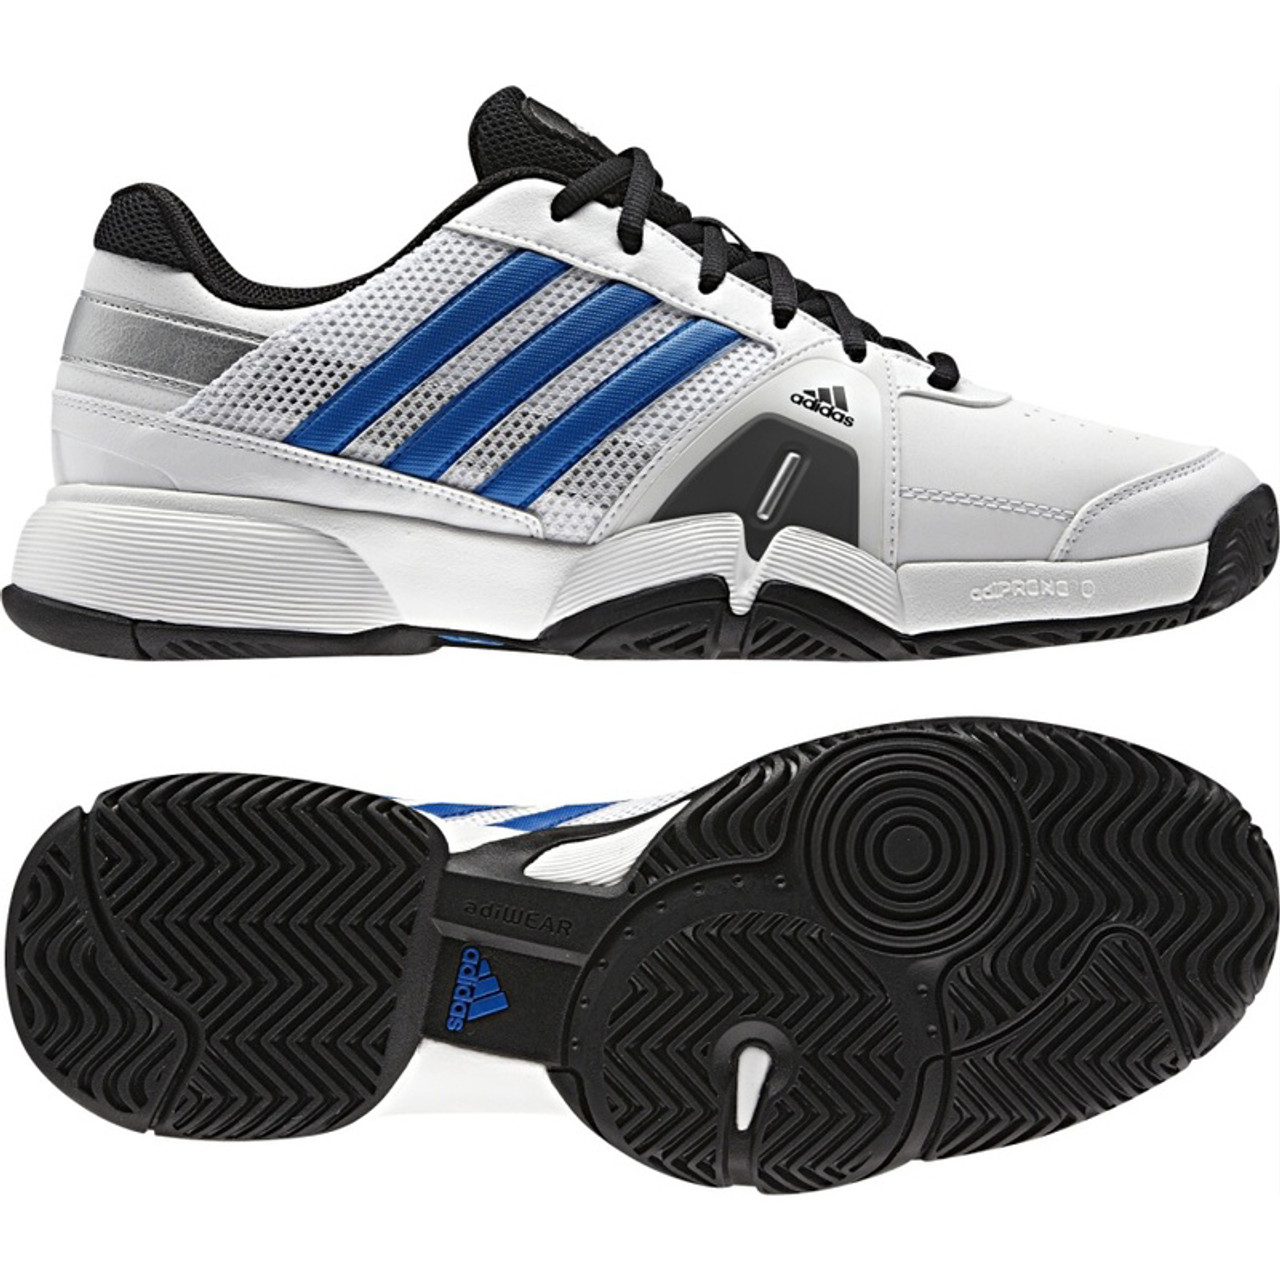 Adidas Barricade Team 3 White/Blue Mens Shoes Discount Adidas Athletic Shoes & More - Shoolu.com | Shoolu.com